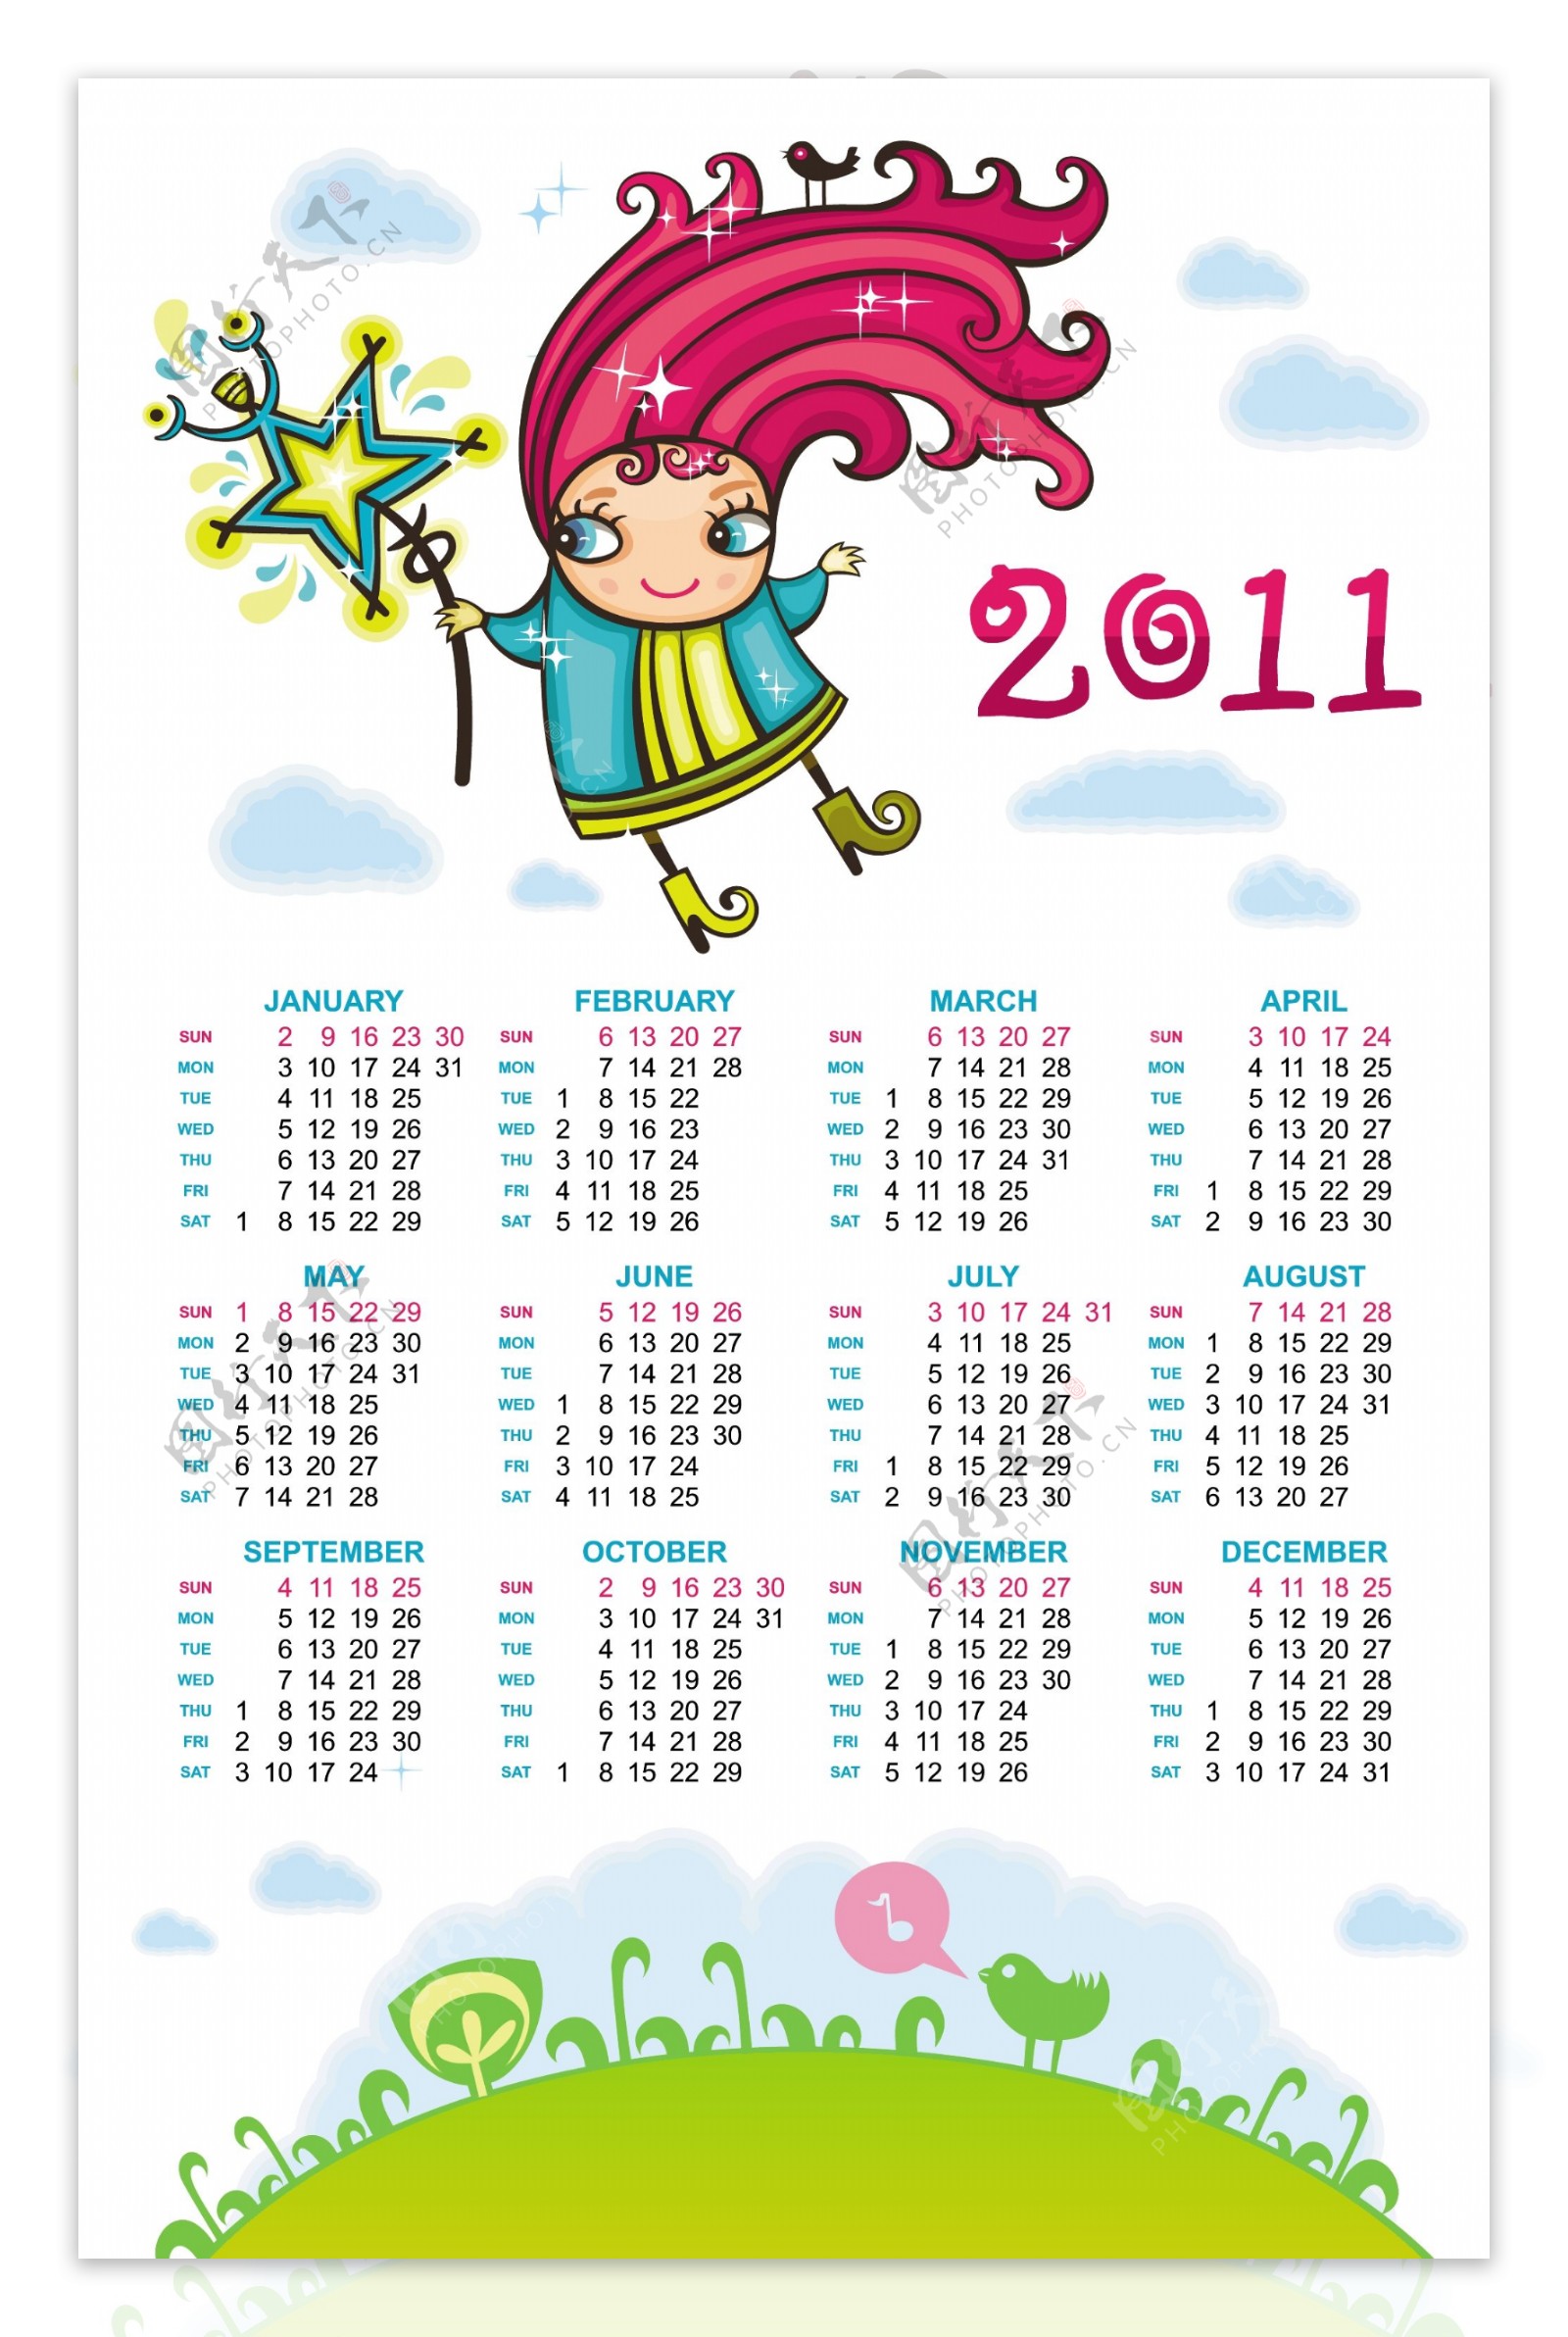 2011手绘动画的剪辑艺术日历